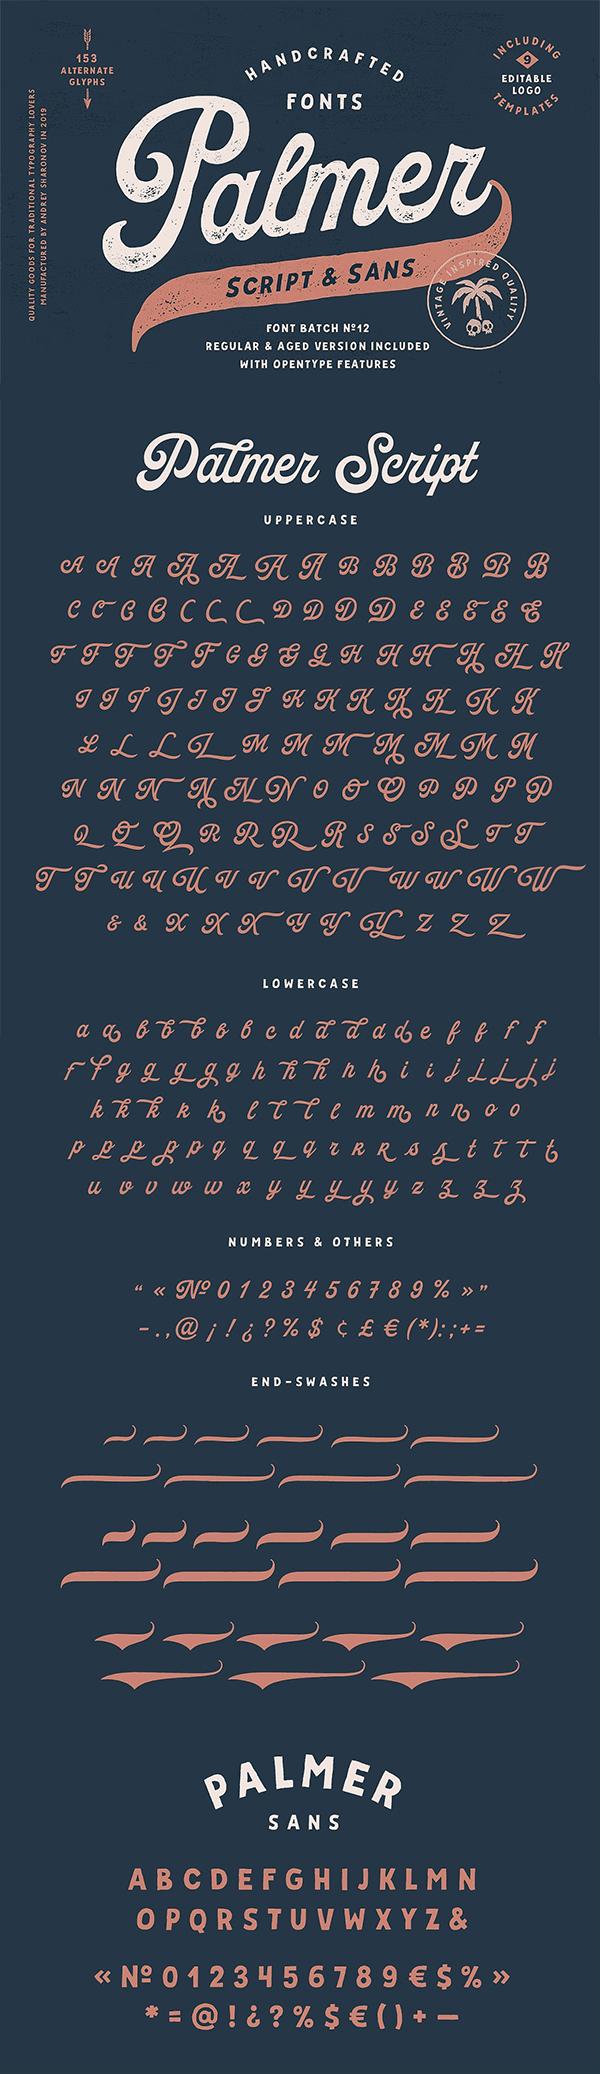 Palmer Script & Sans Font